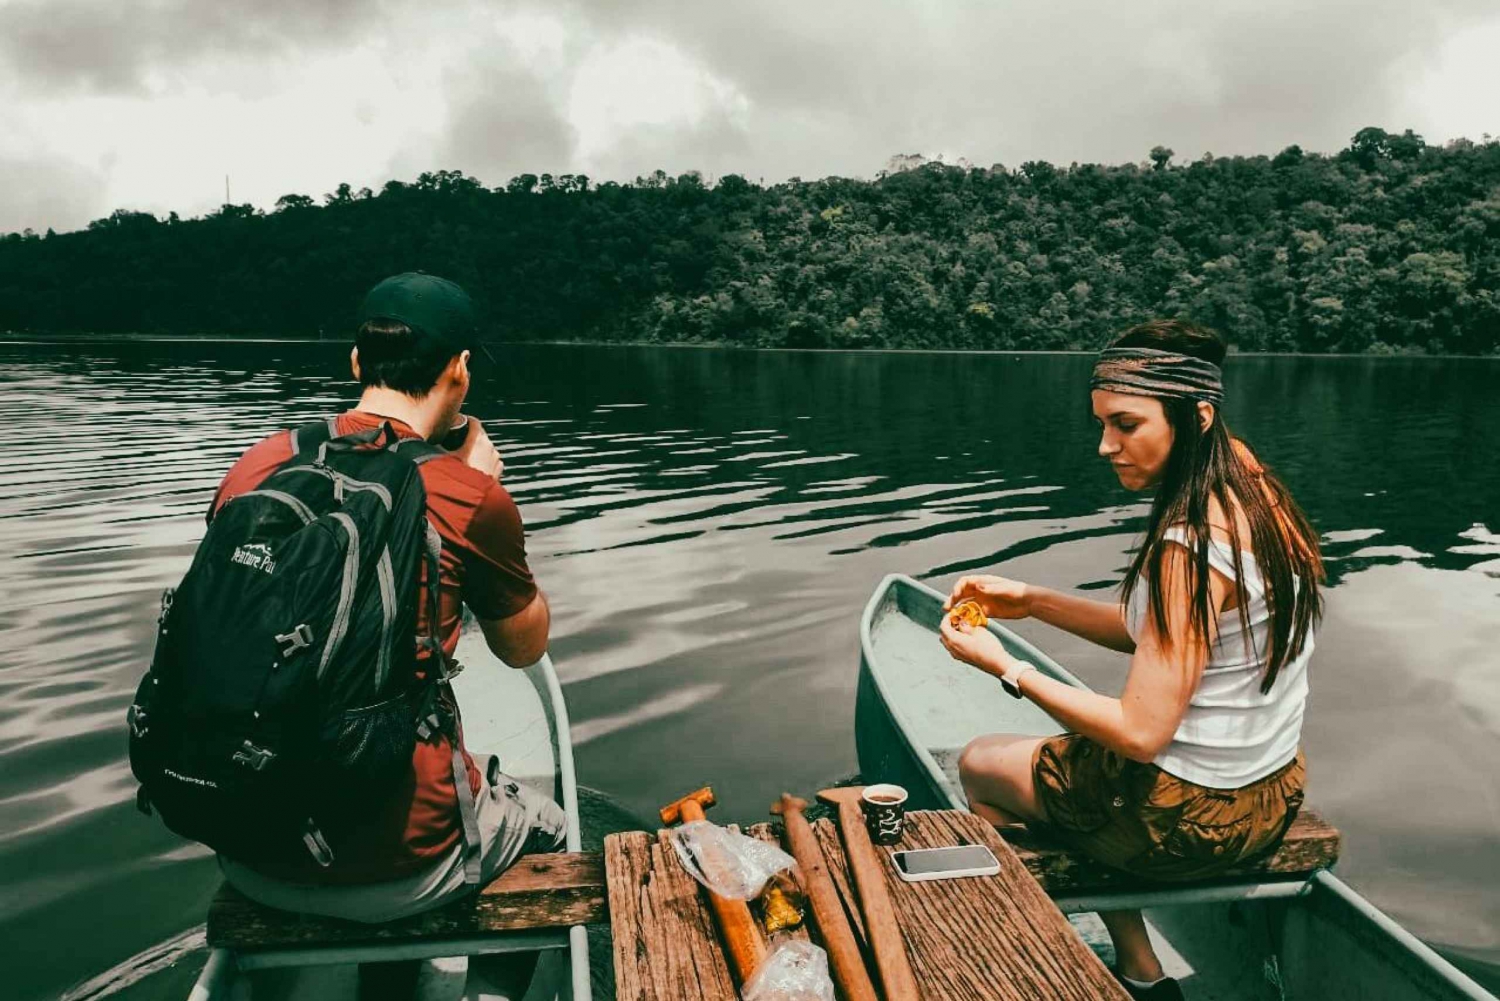 Munduk: Mit dem Kanu auf dem See fahren und einen geheimen Tempel entdecken